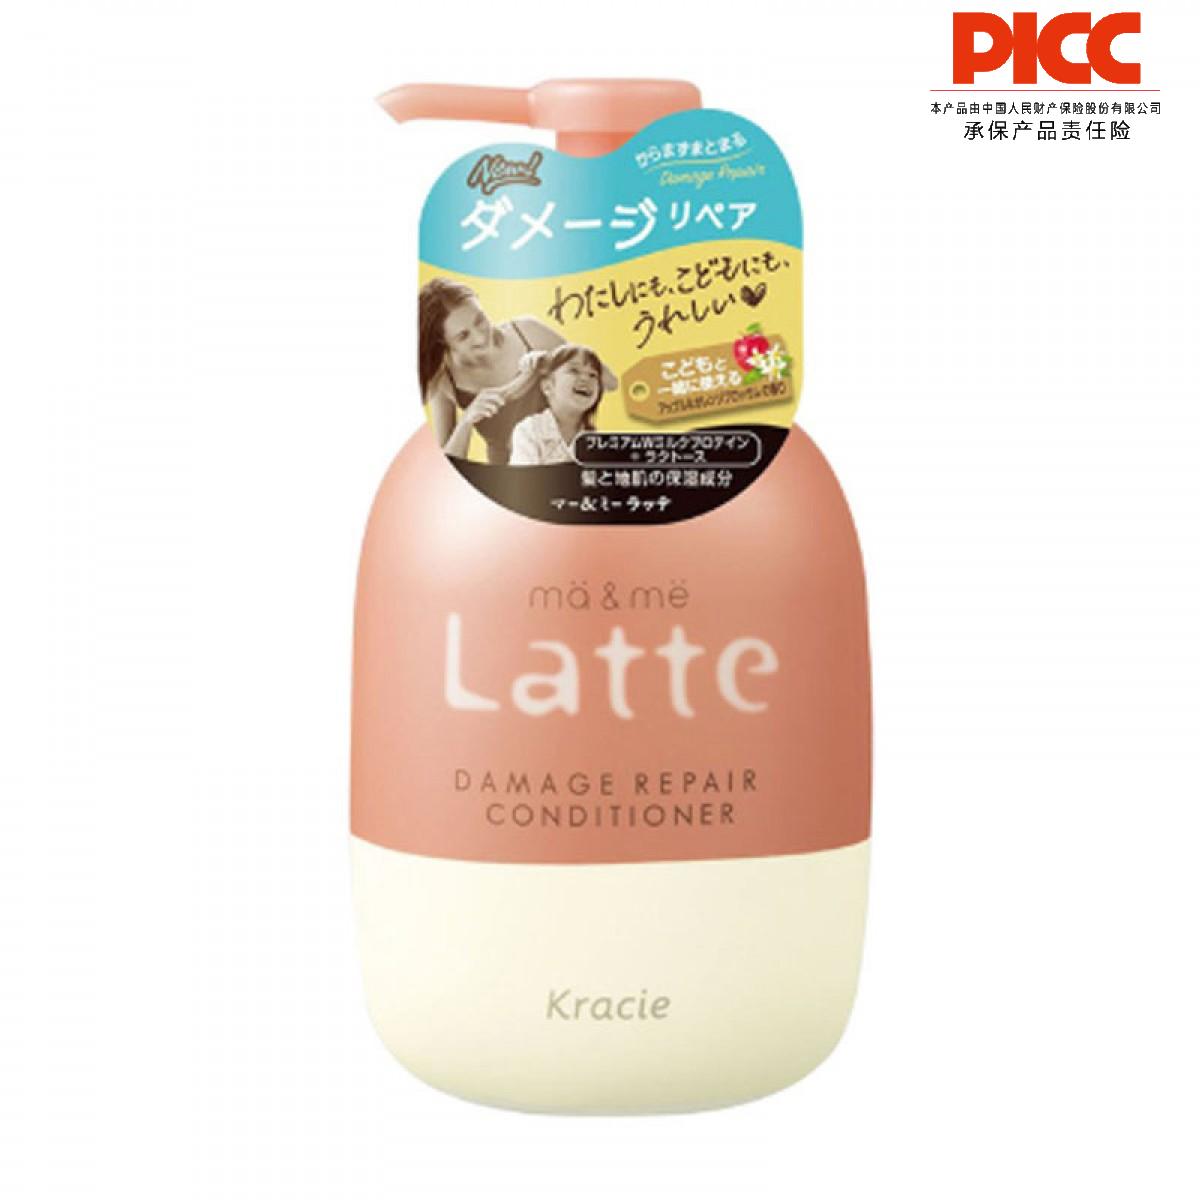 【保稅】日本CIE/肌美精 葵緹亞牛奶蛋白洗發水護發素 490g